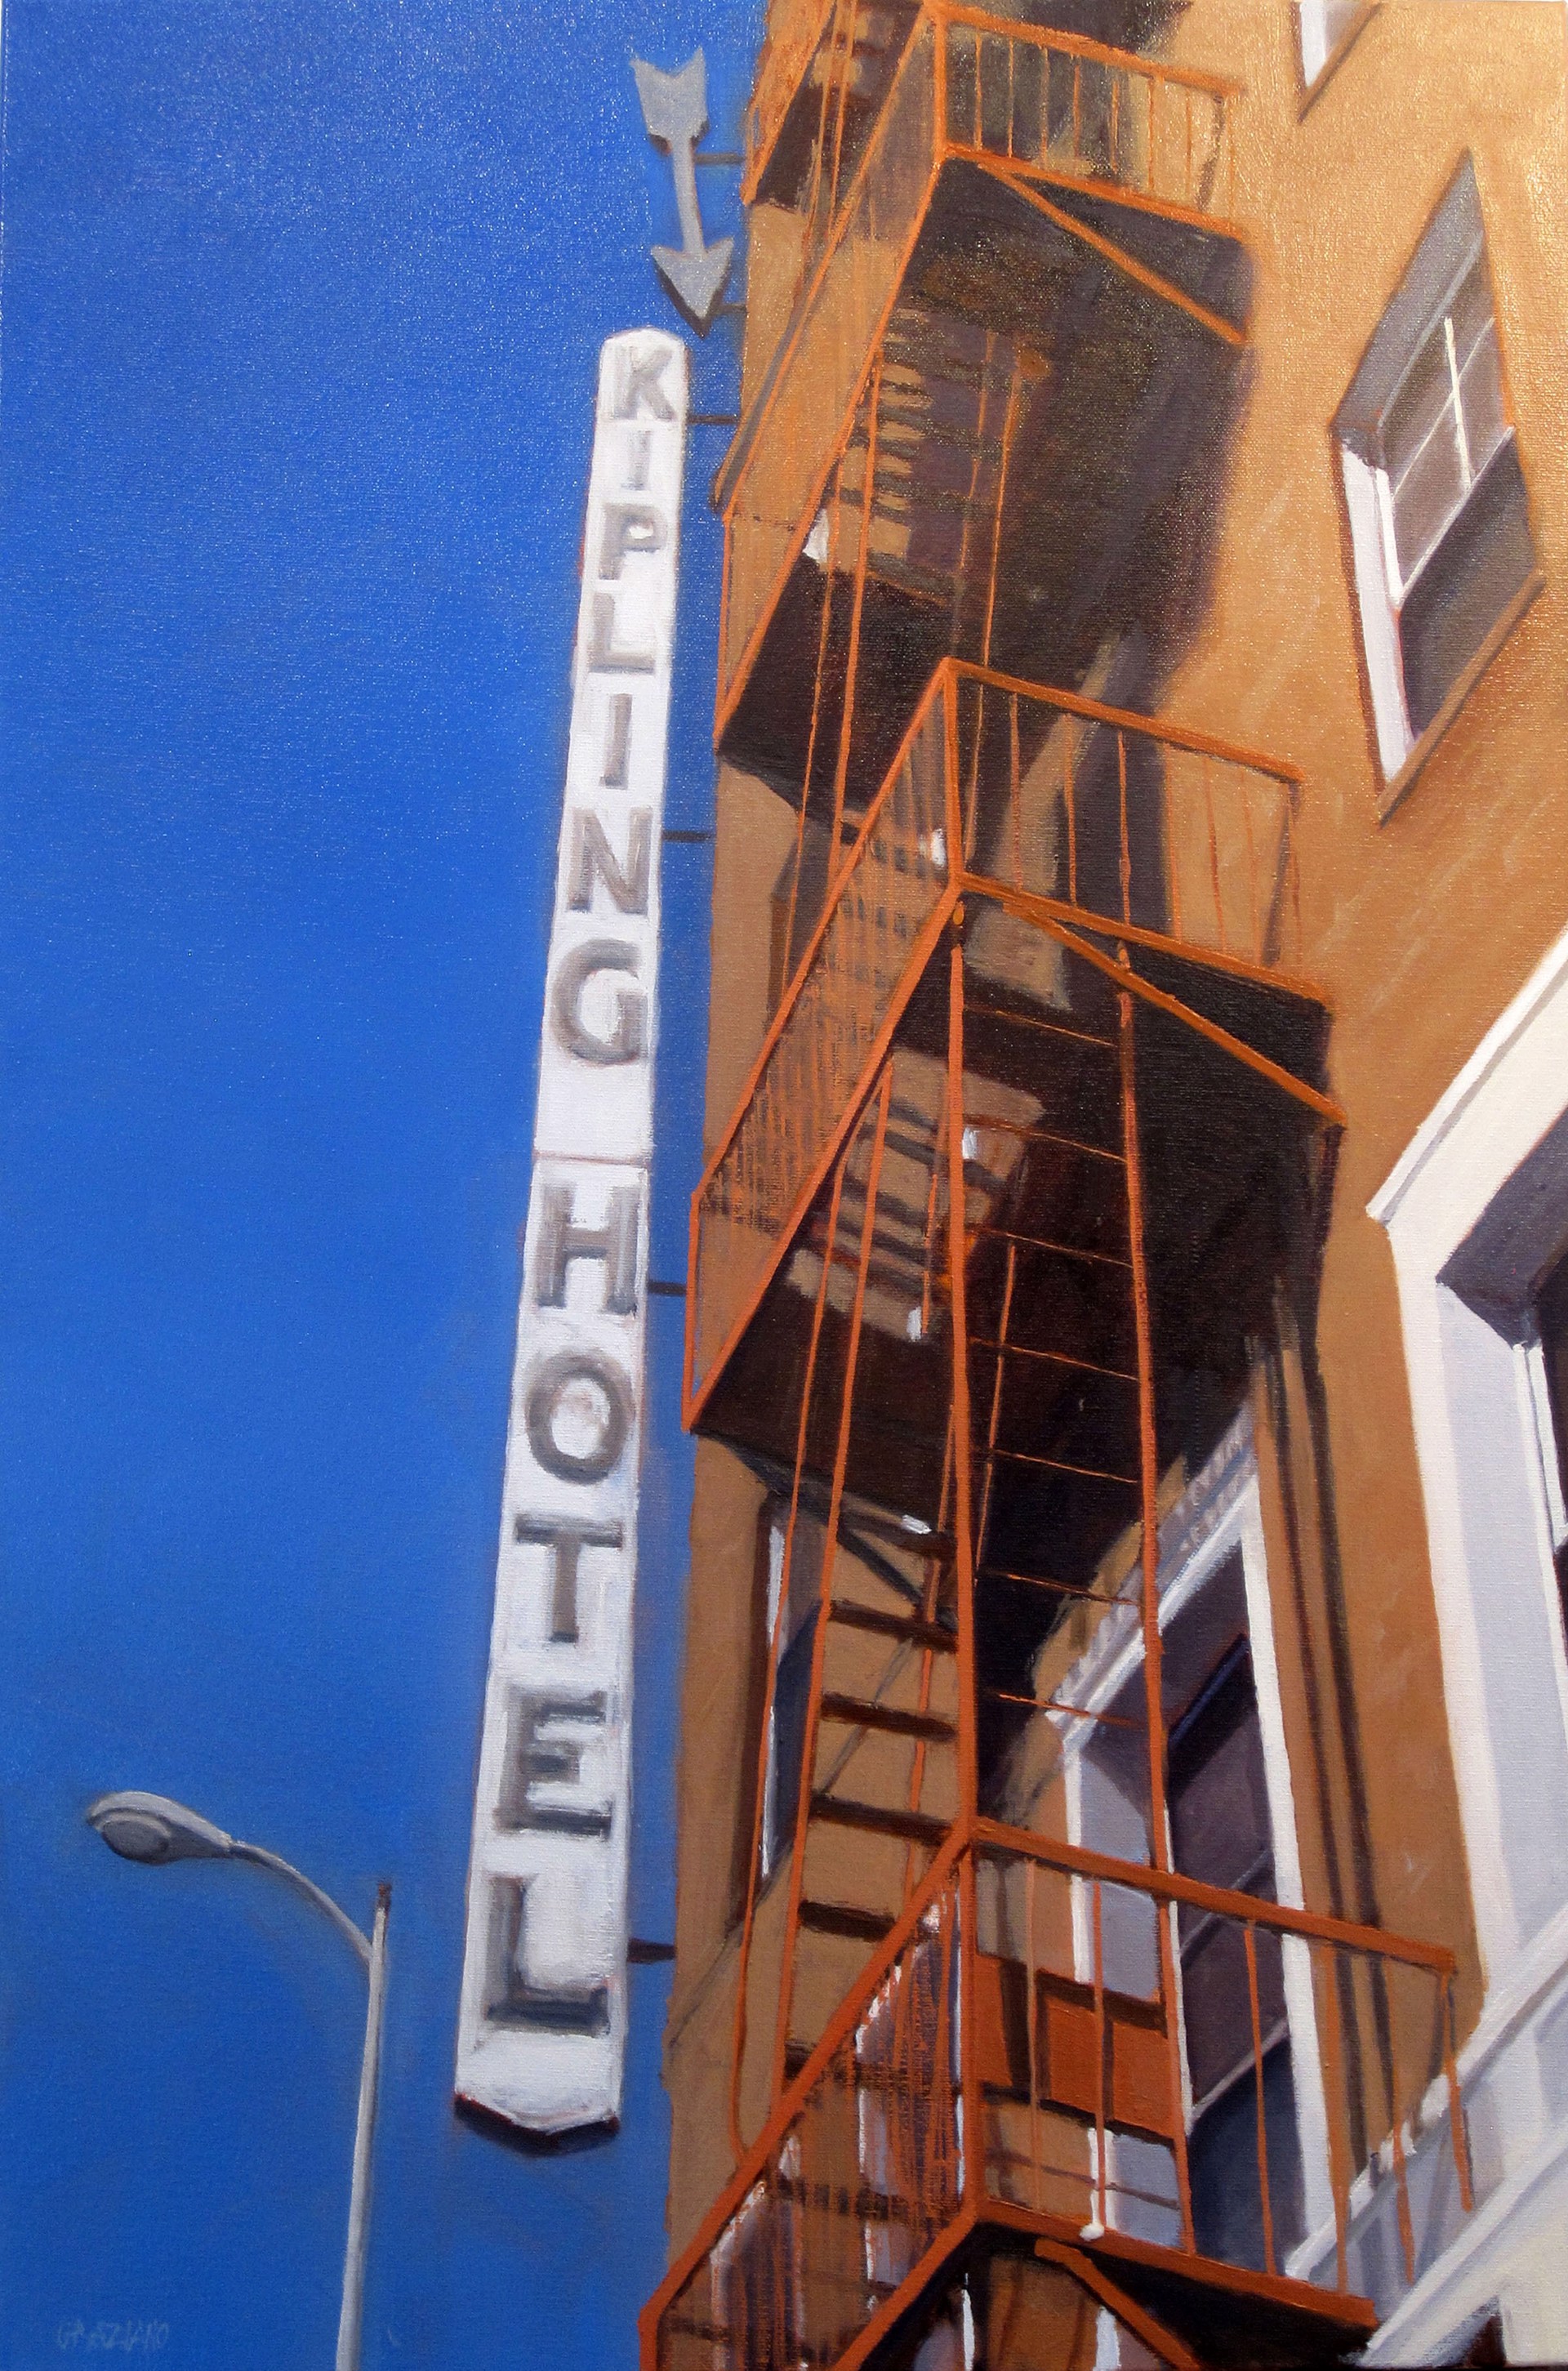 Kipling Hotel by Dan Graziano